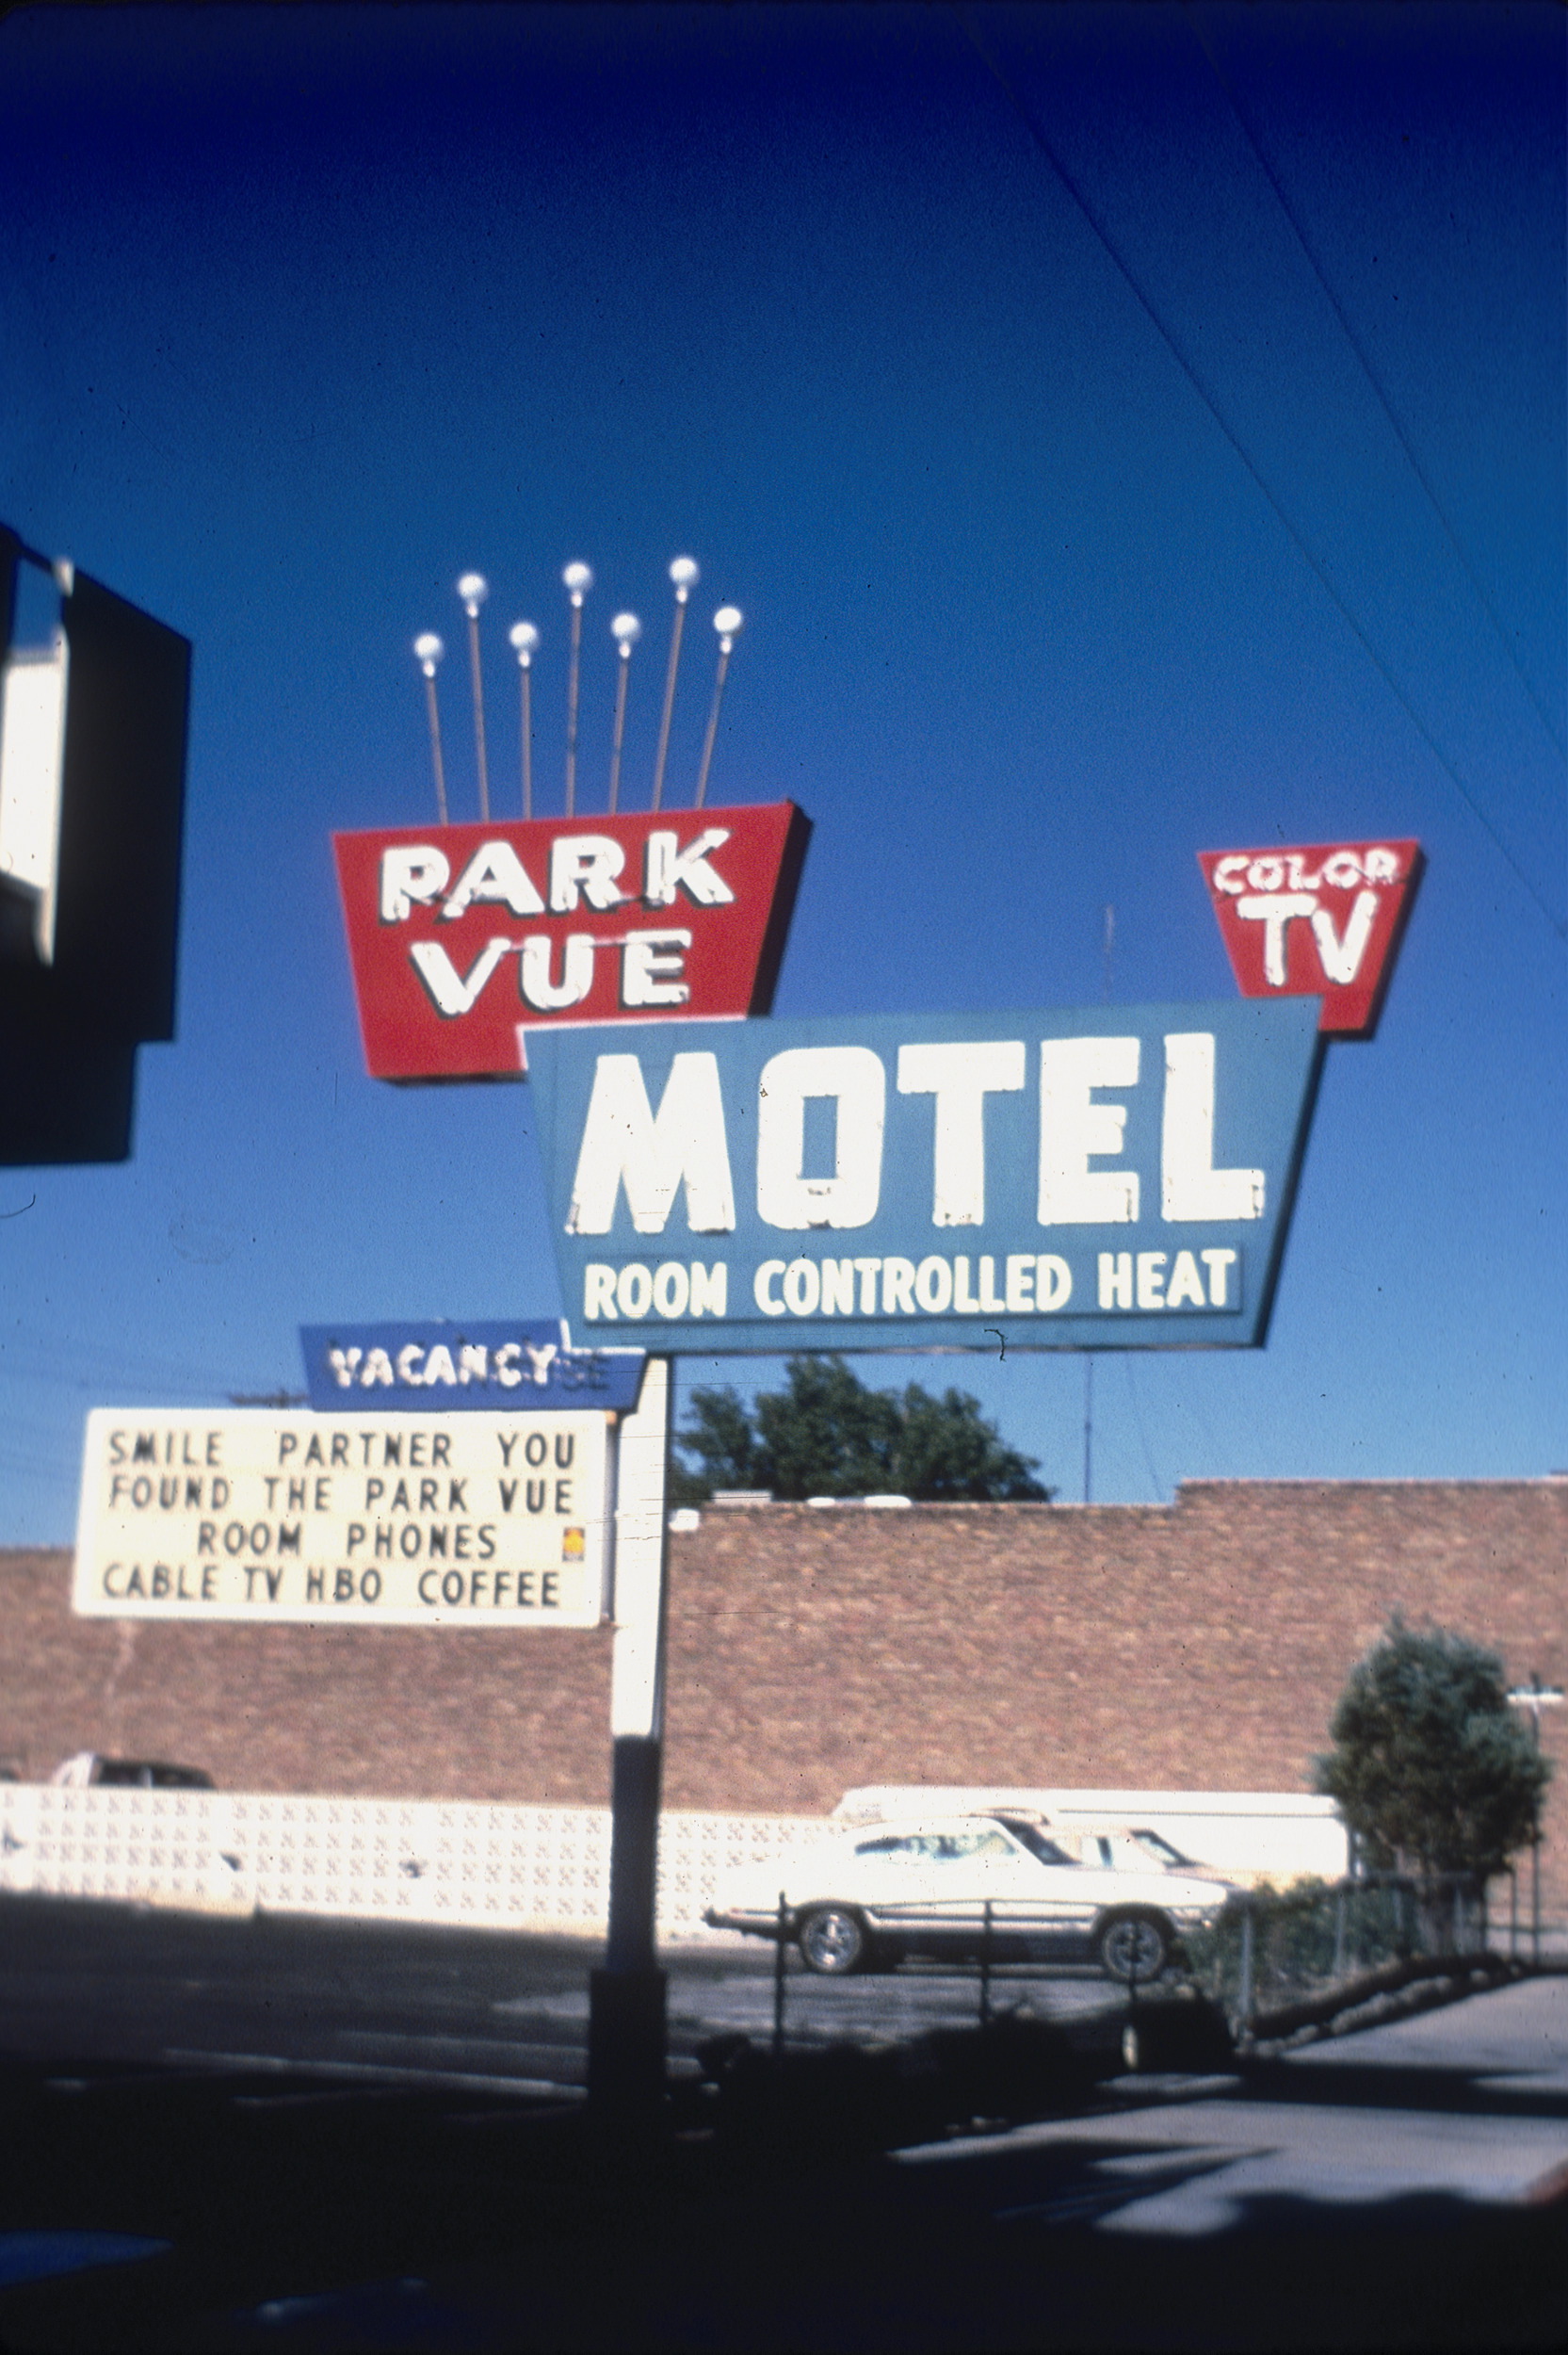 Slide of Park Vue Motel, Ely, Nevada, 1986